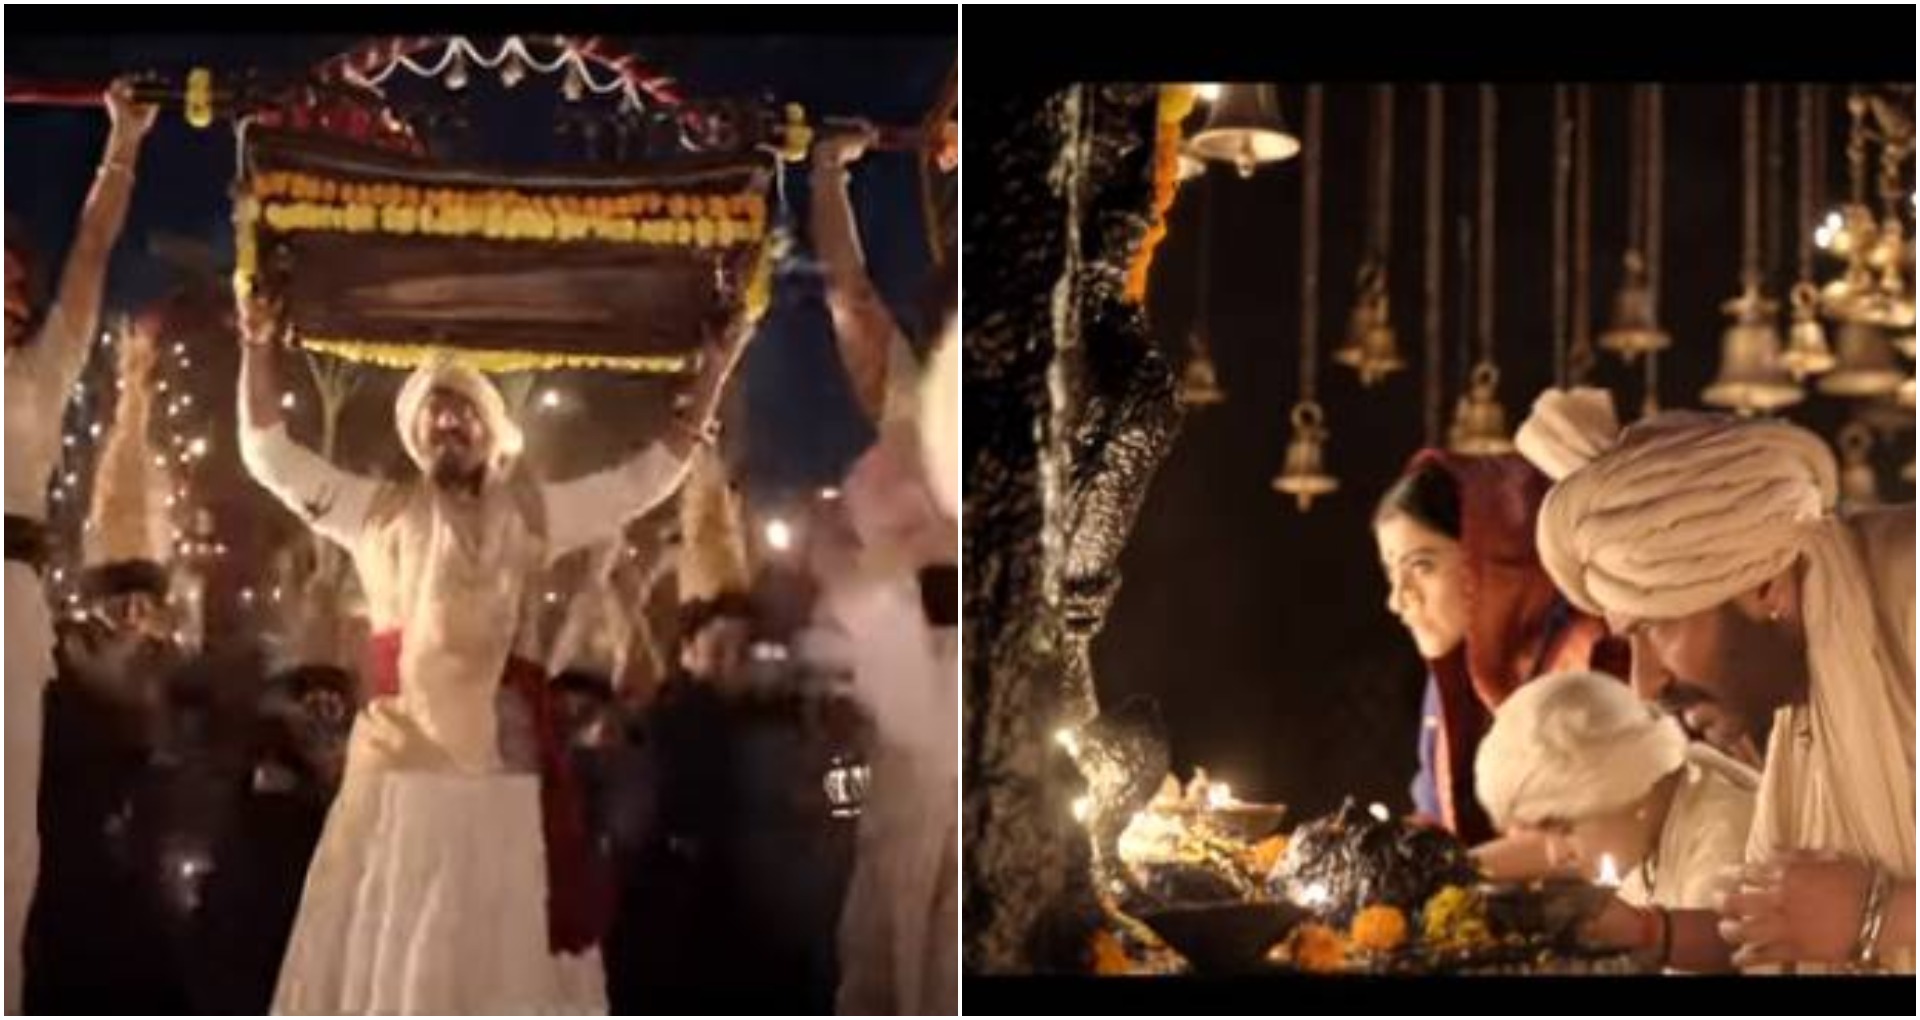 अजय देवगन सर पर पालखी उठाये, देवी के आगे सिष झुकाये दिख रहे हैं ‘माय भवानी’ गाने में, देखें वीडियो